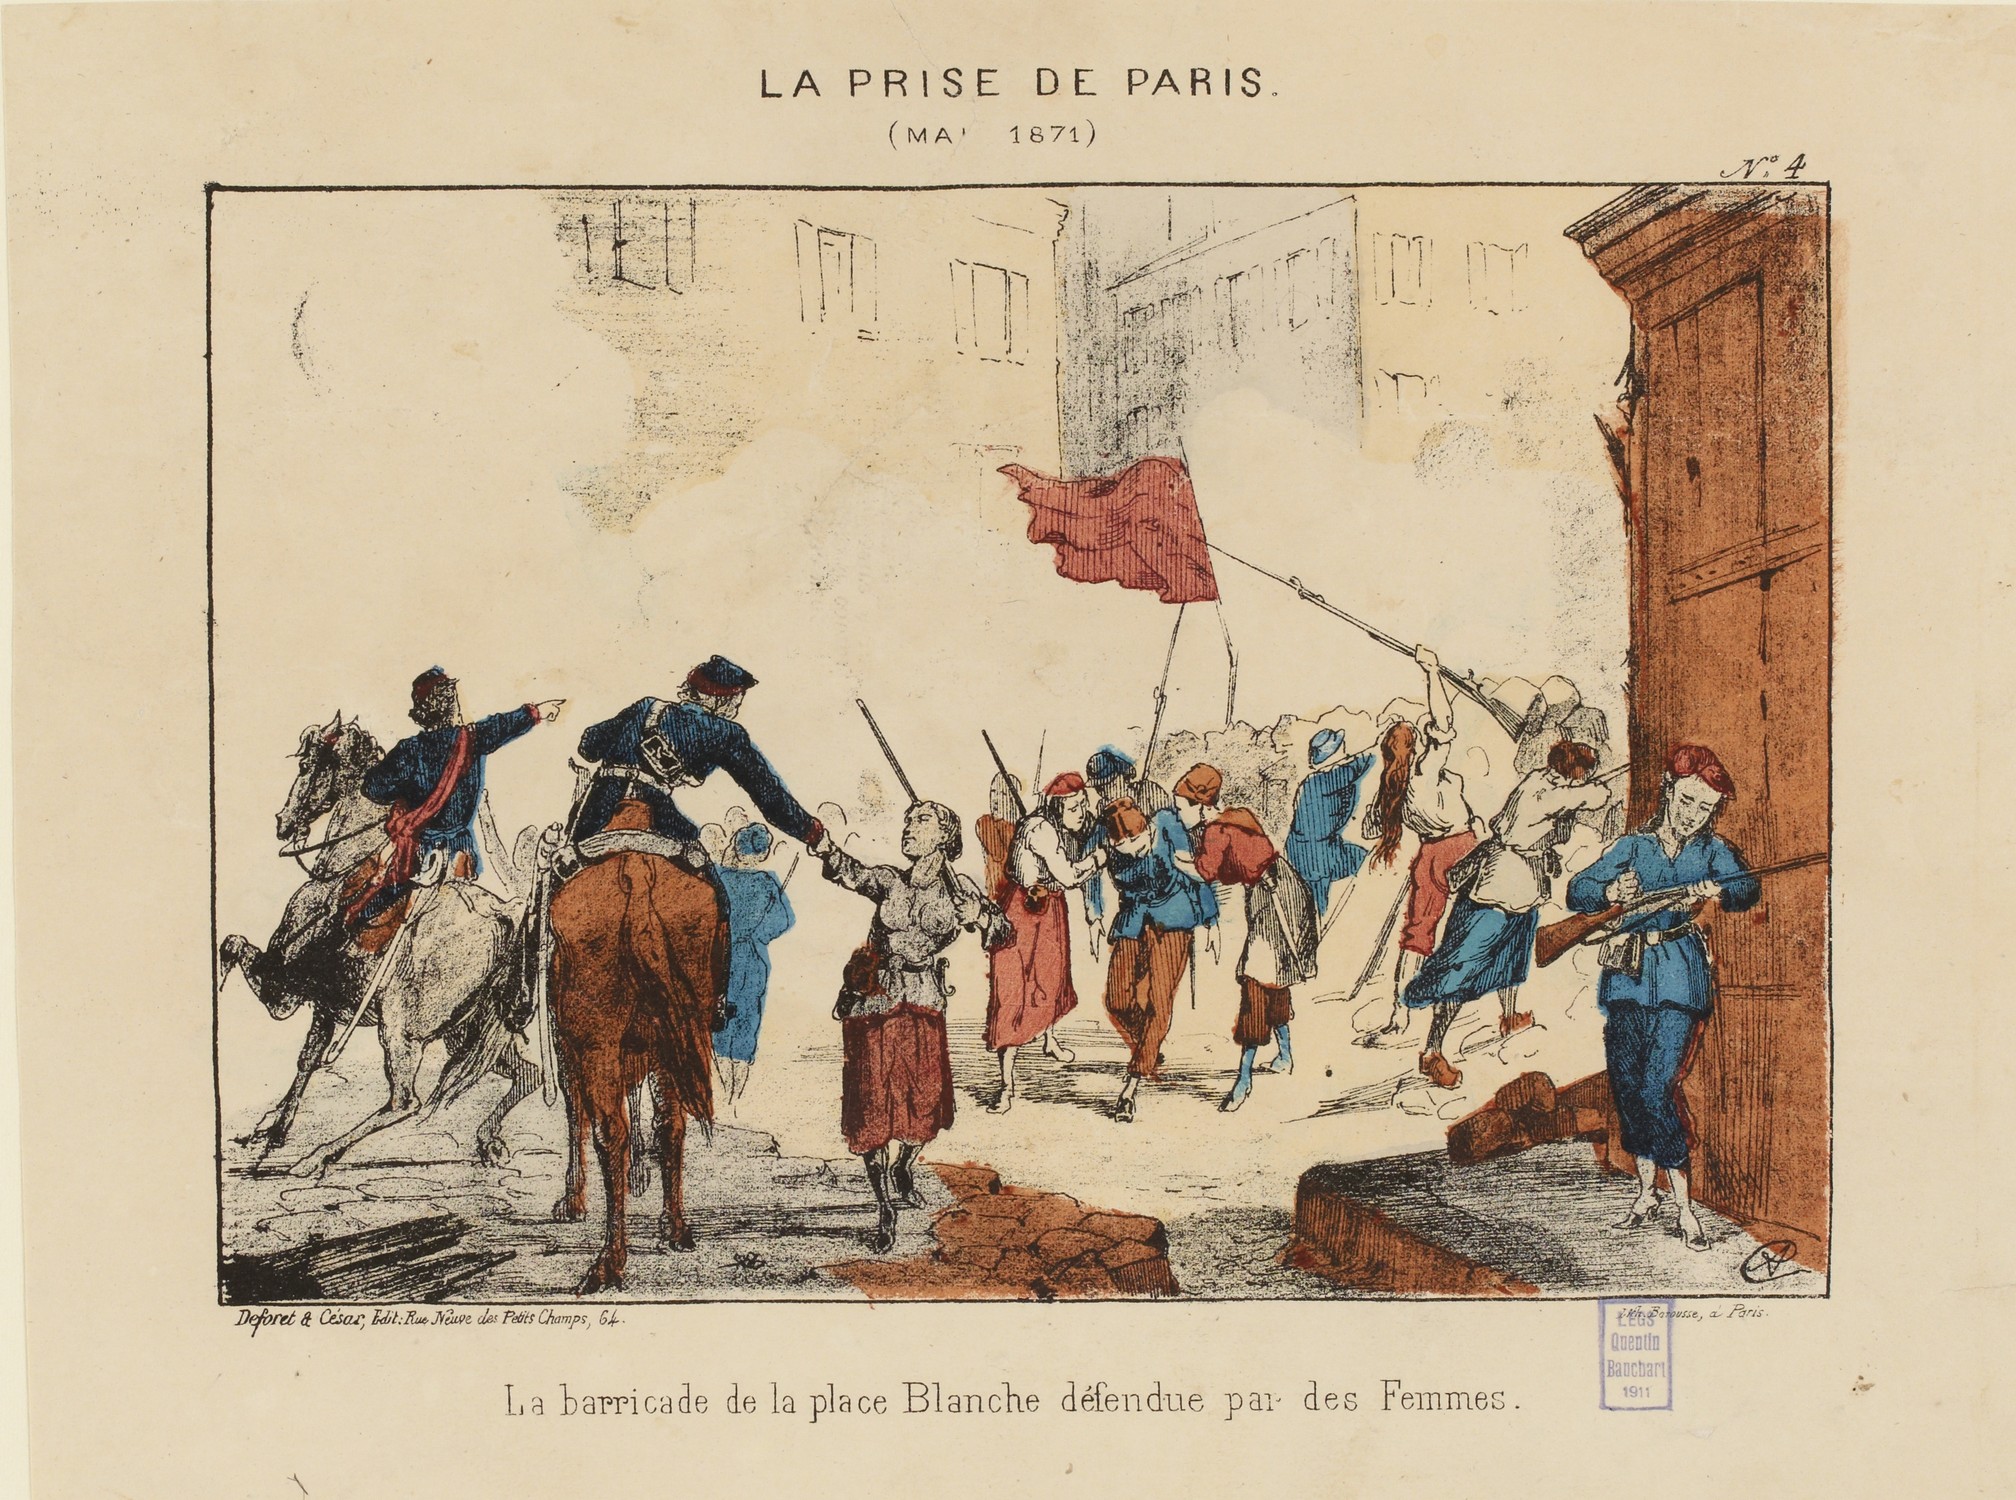 La barricade de la place blanche défendue par des femmes - Estampe en couleurs (© Source : Musée Carnavalet - Histoire de Paris)